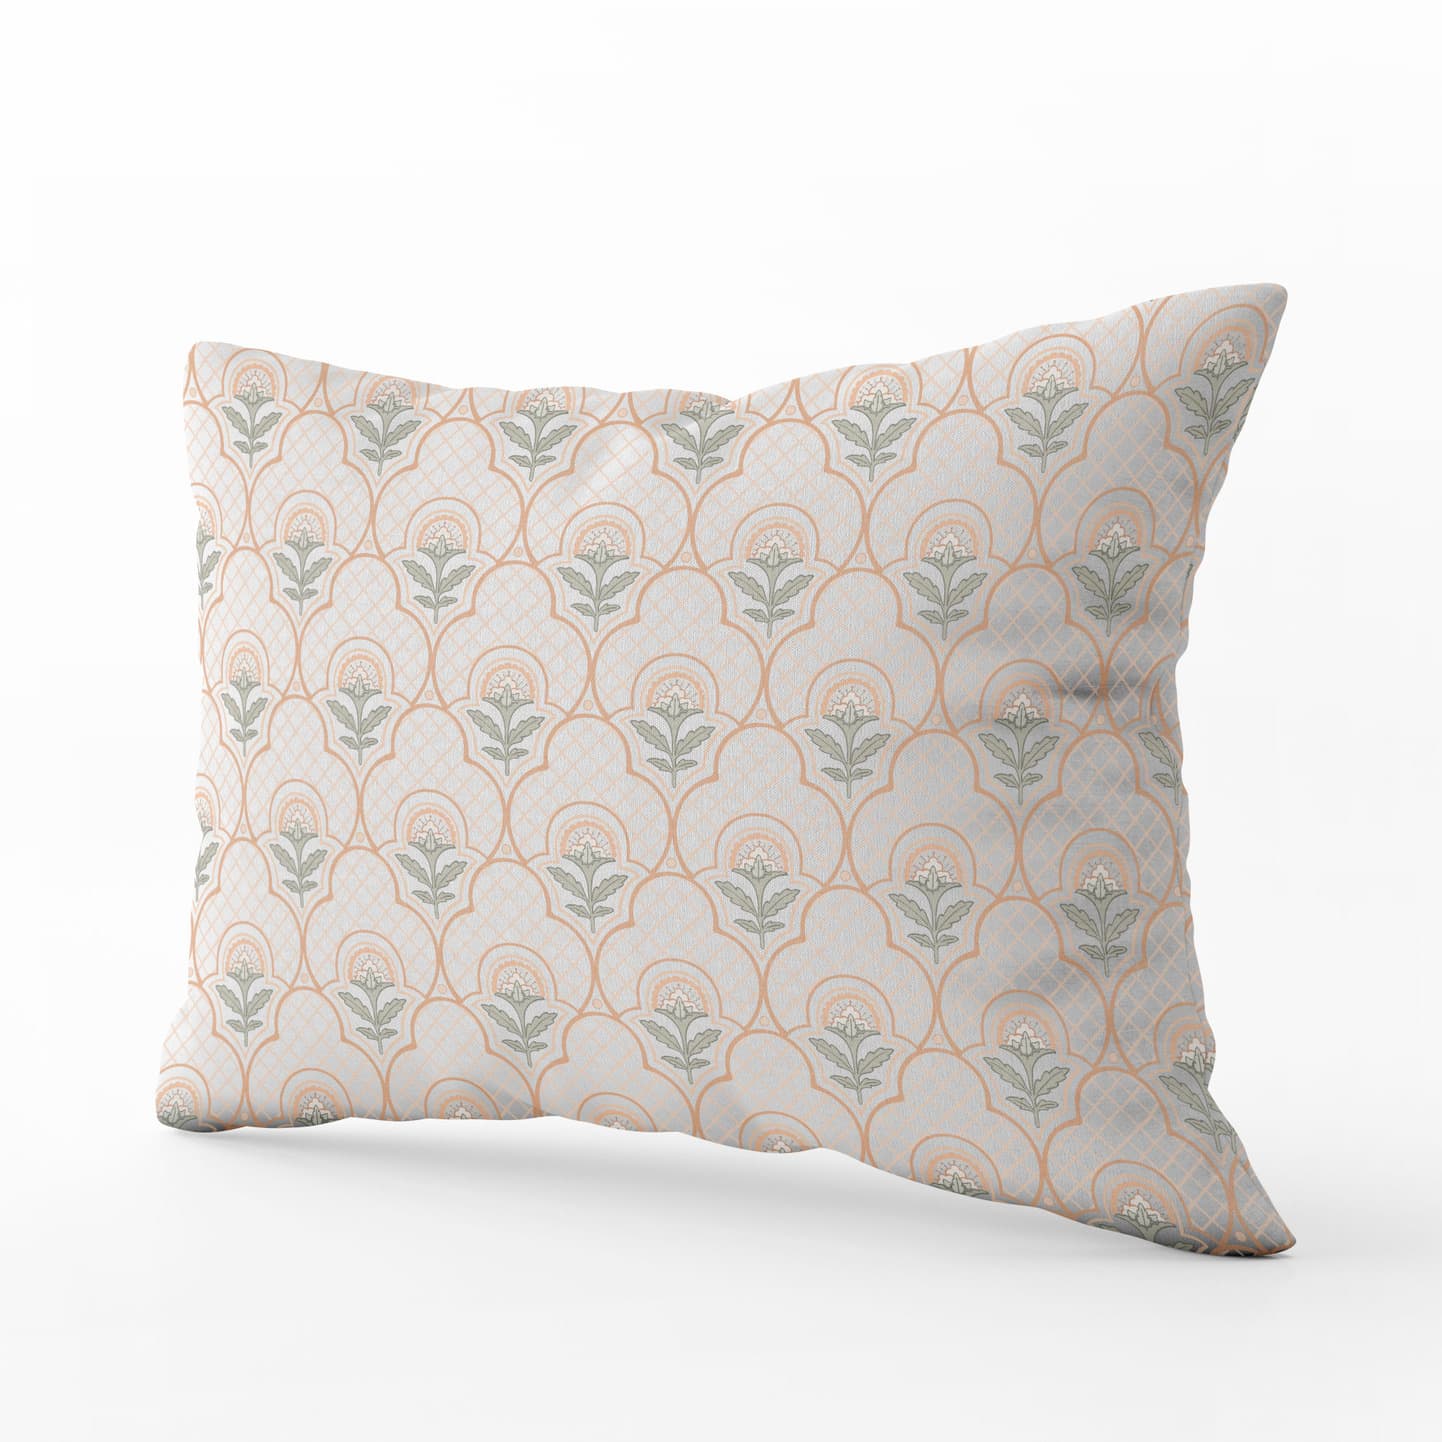 Amelia Lumbar Pillow in Sherbet Olive